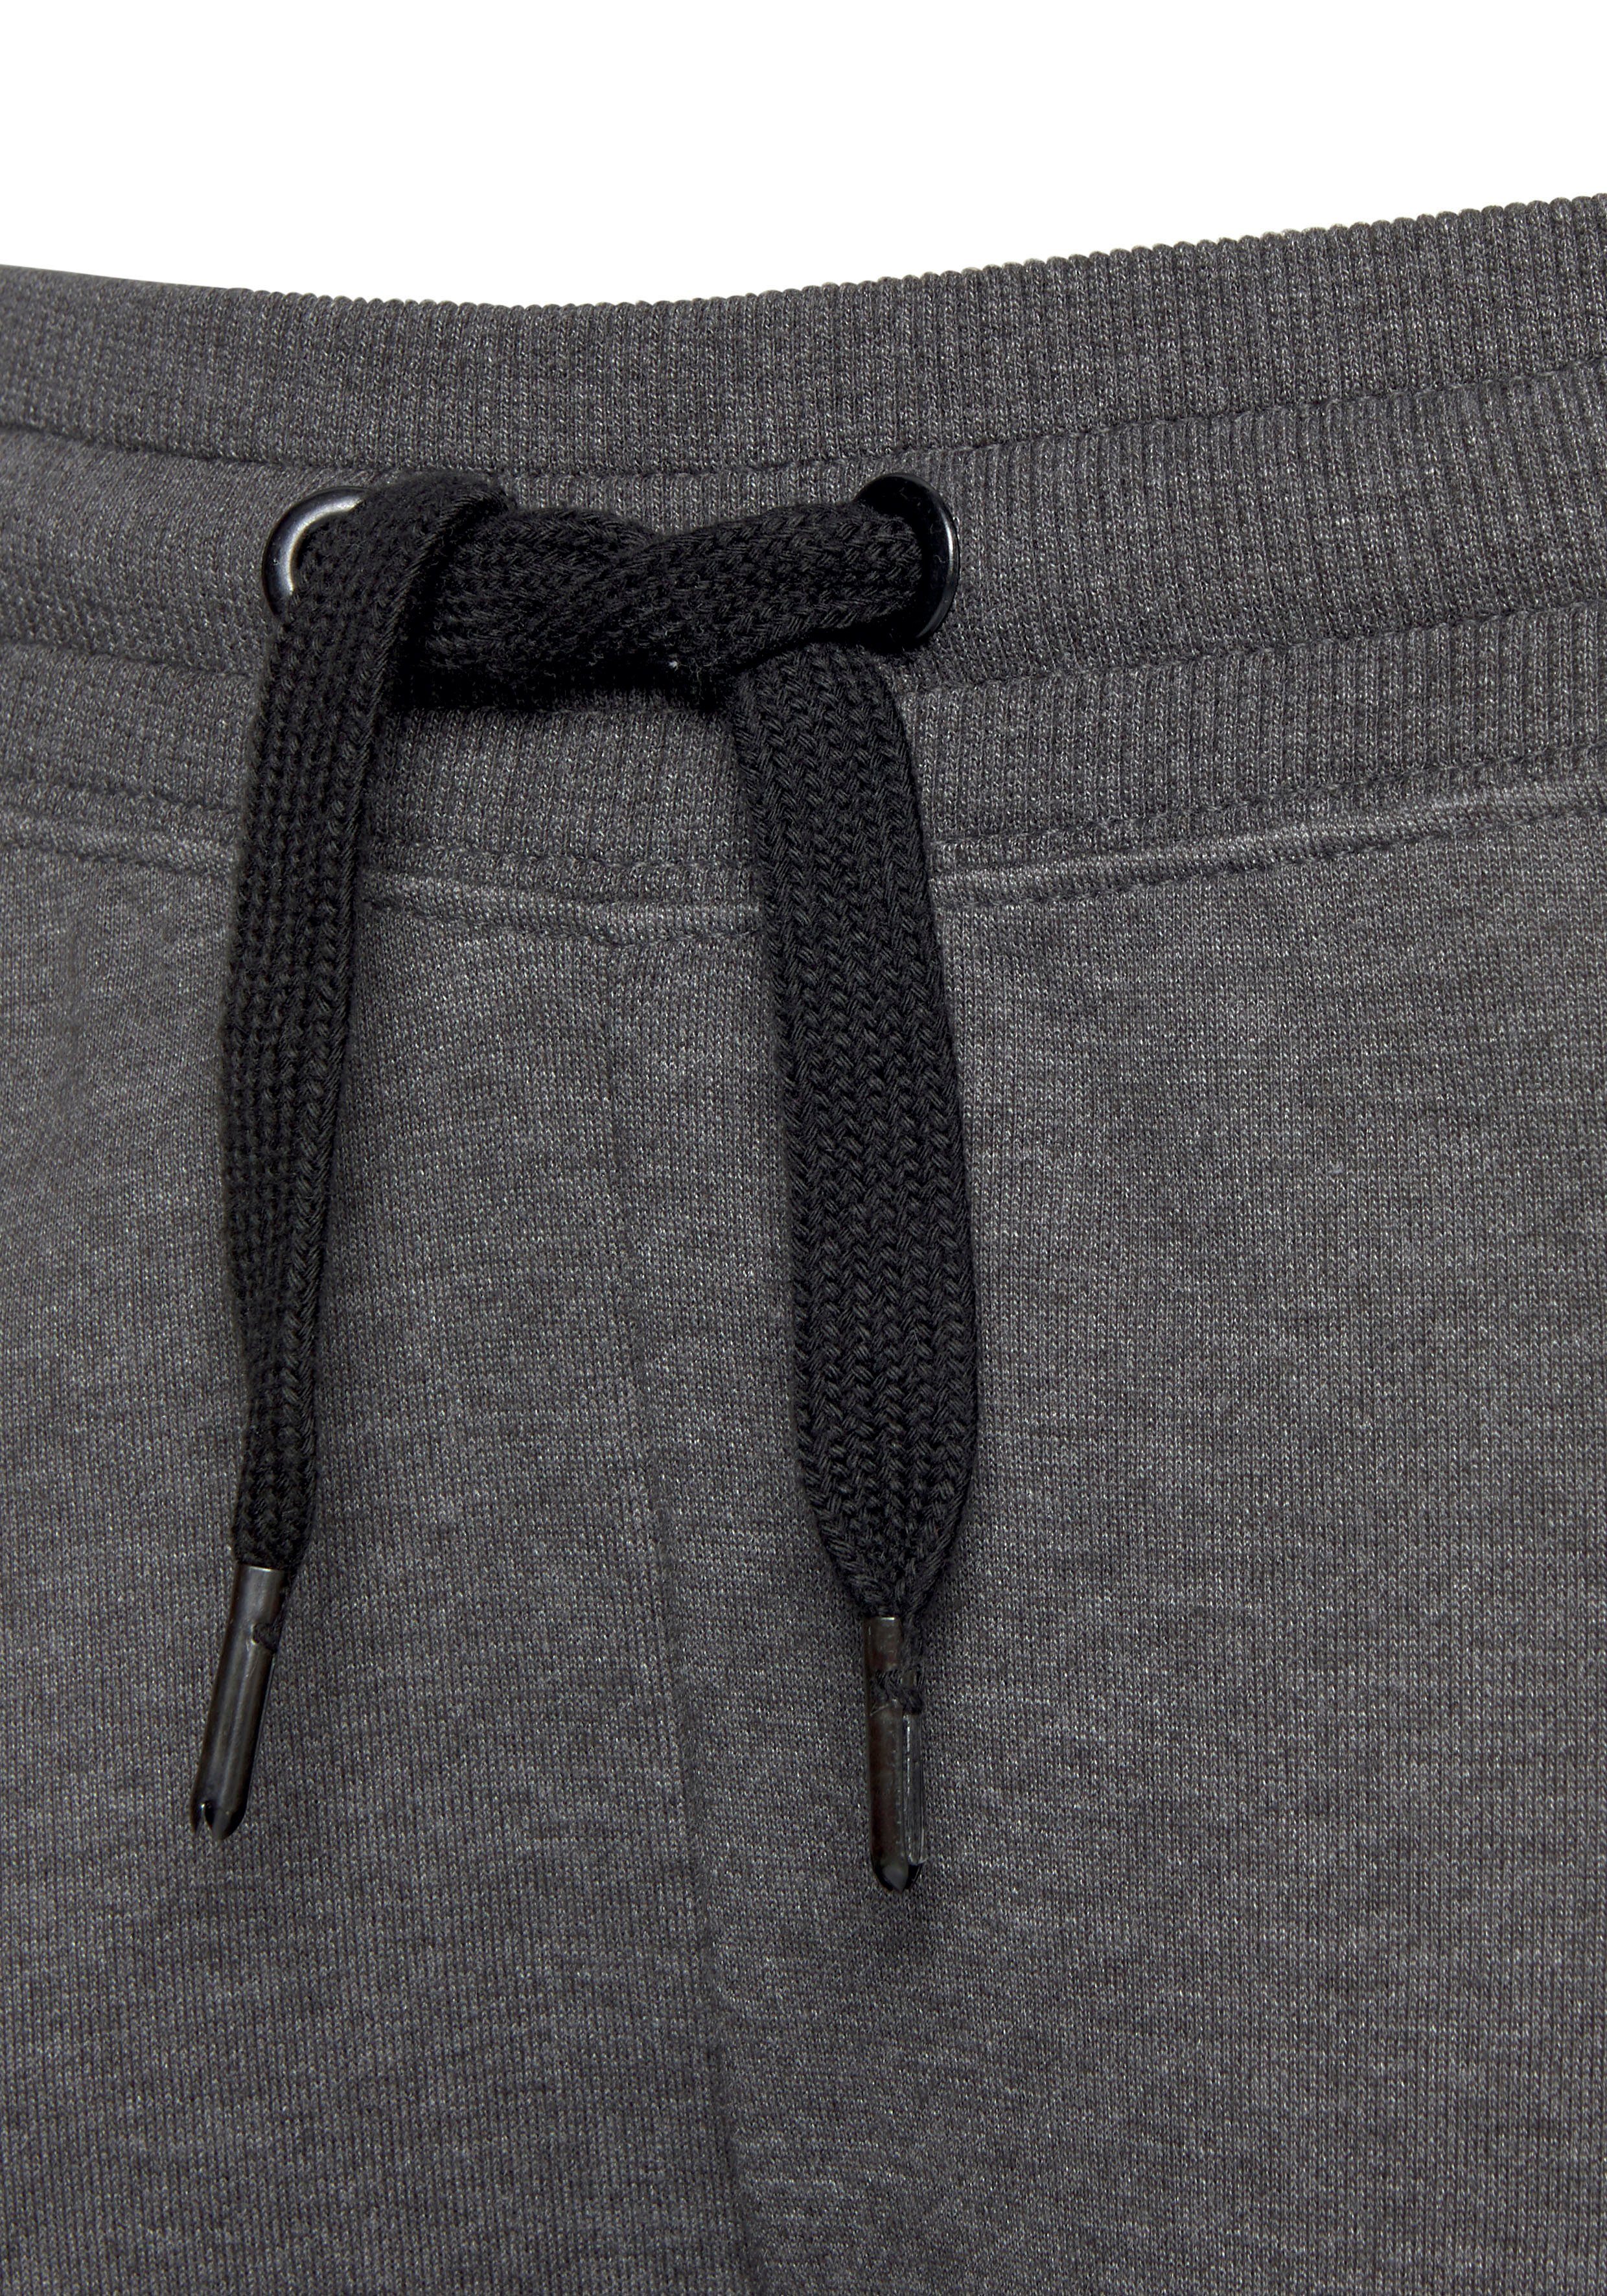 Bench. Loungewear Sweathose mit Seitenstreifen Bein, Loungeanzug anthrazit-meliert-schwarz und schmalem